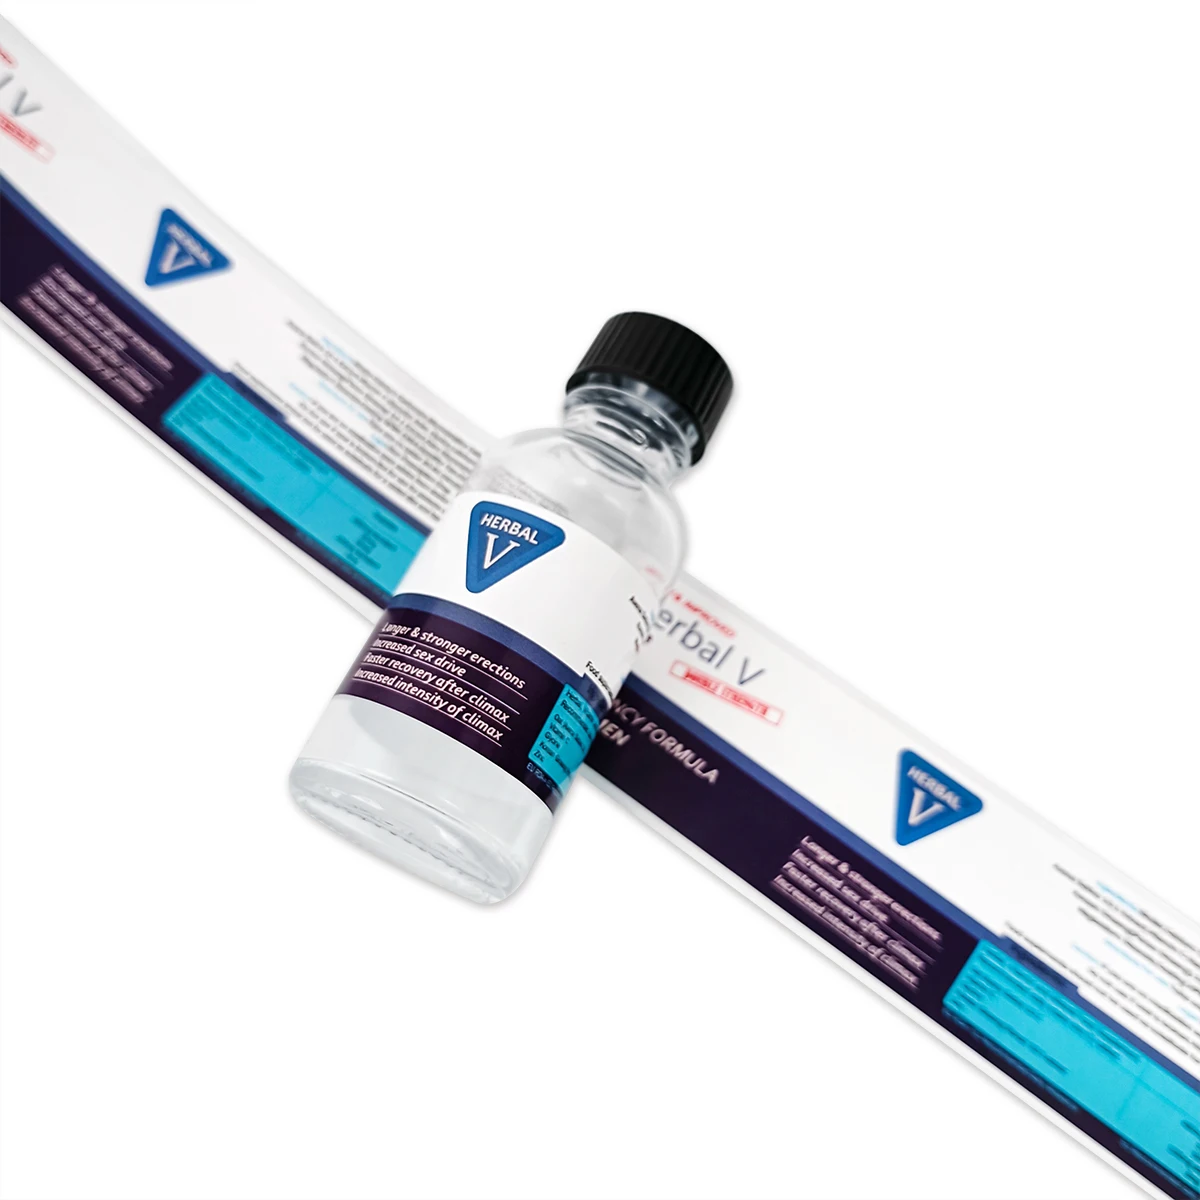 Custom Printed Waterproof Adhesive Vinyl Label Sticker Vitamin Supplement Product Medicine Vial Bottle Logo Packaging Vitamins